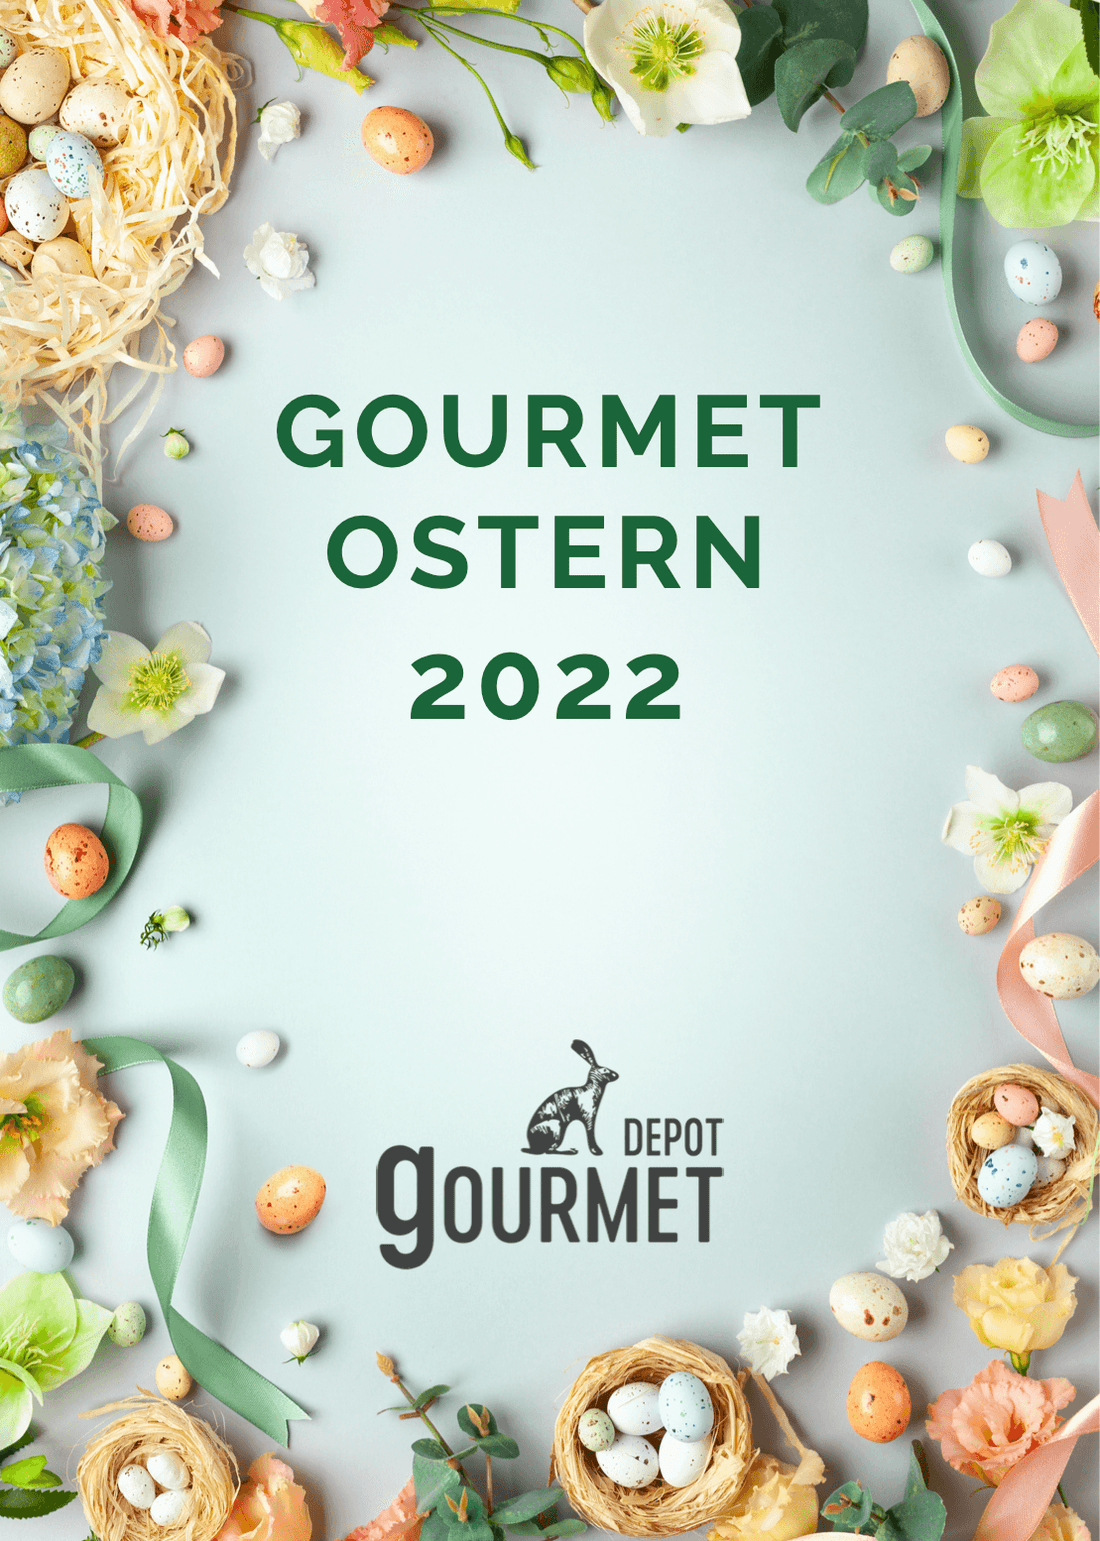 Gourmet Ostern 2022 - Gourmet Depot AG